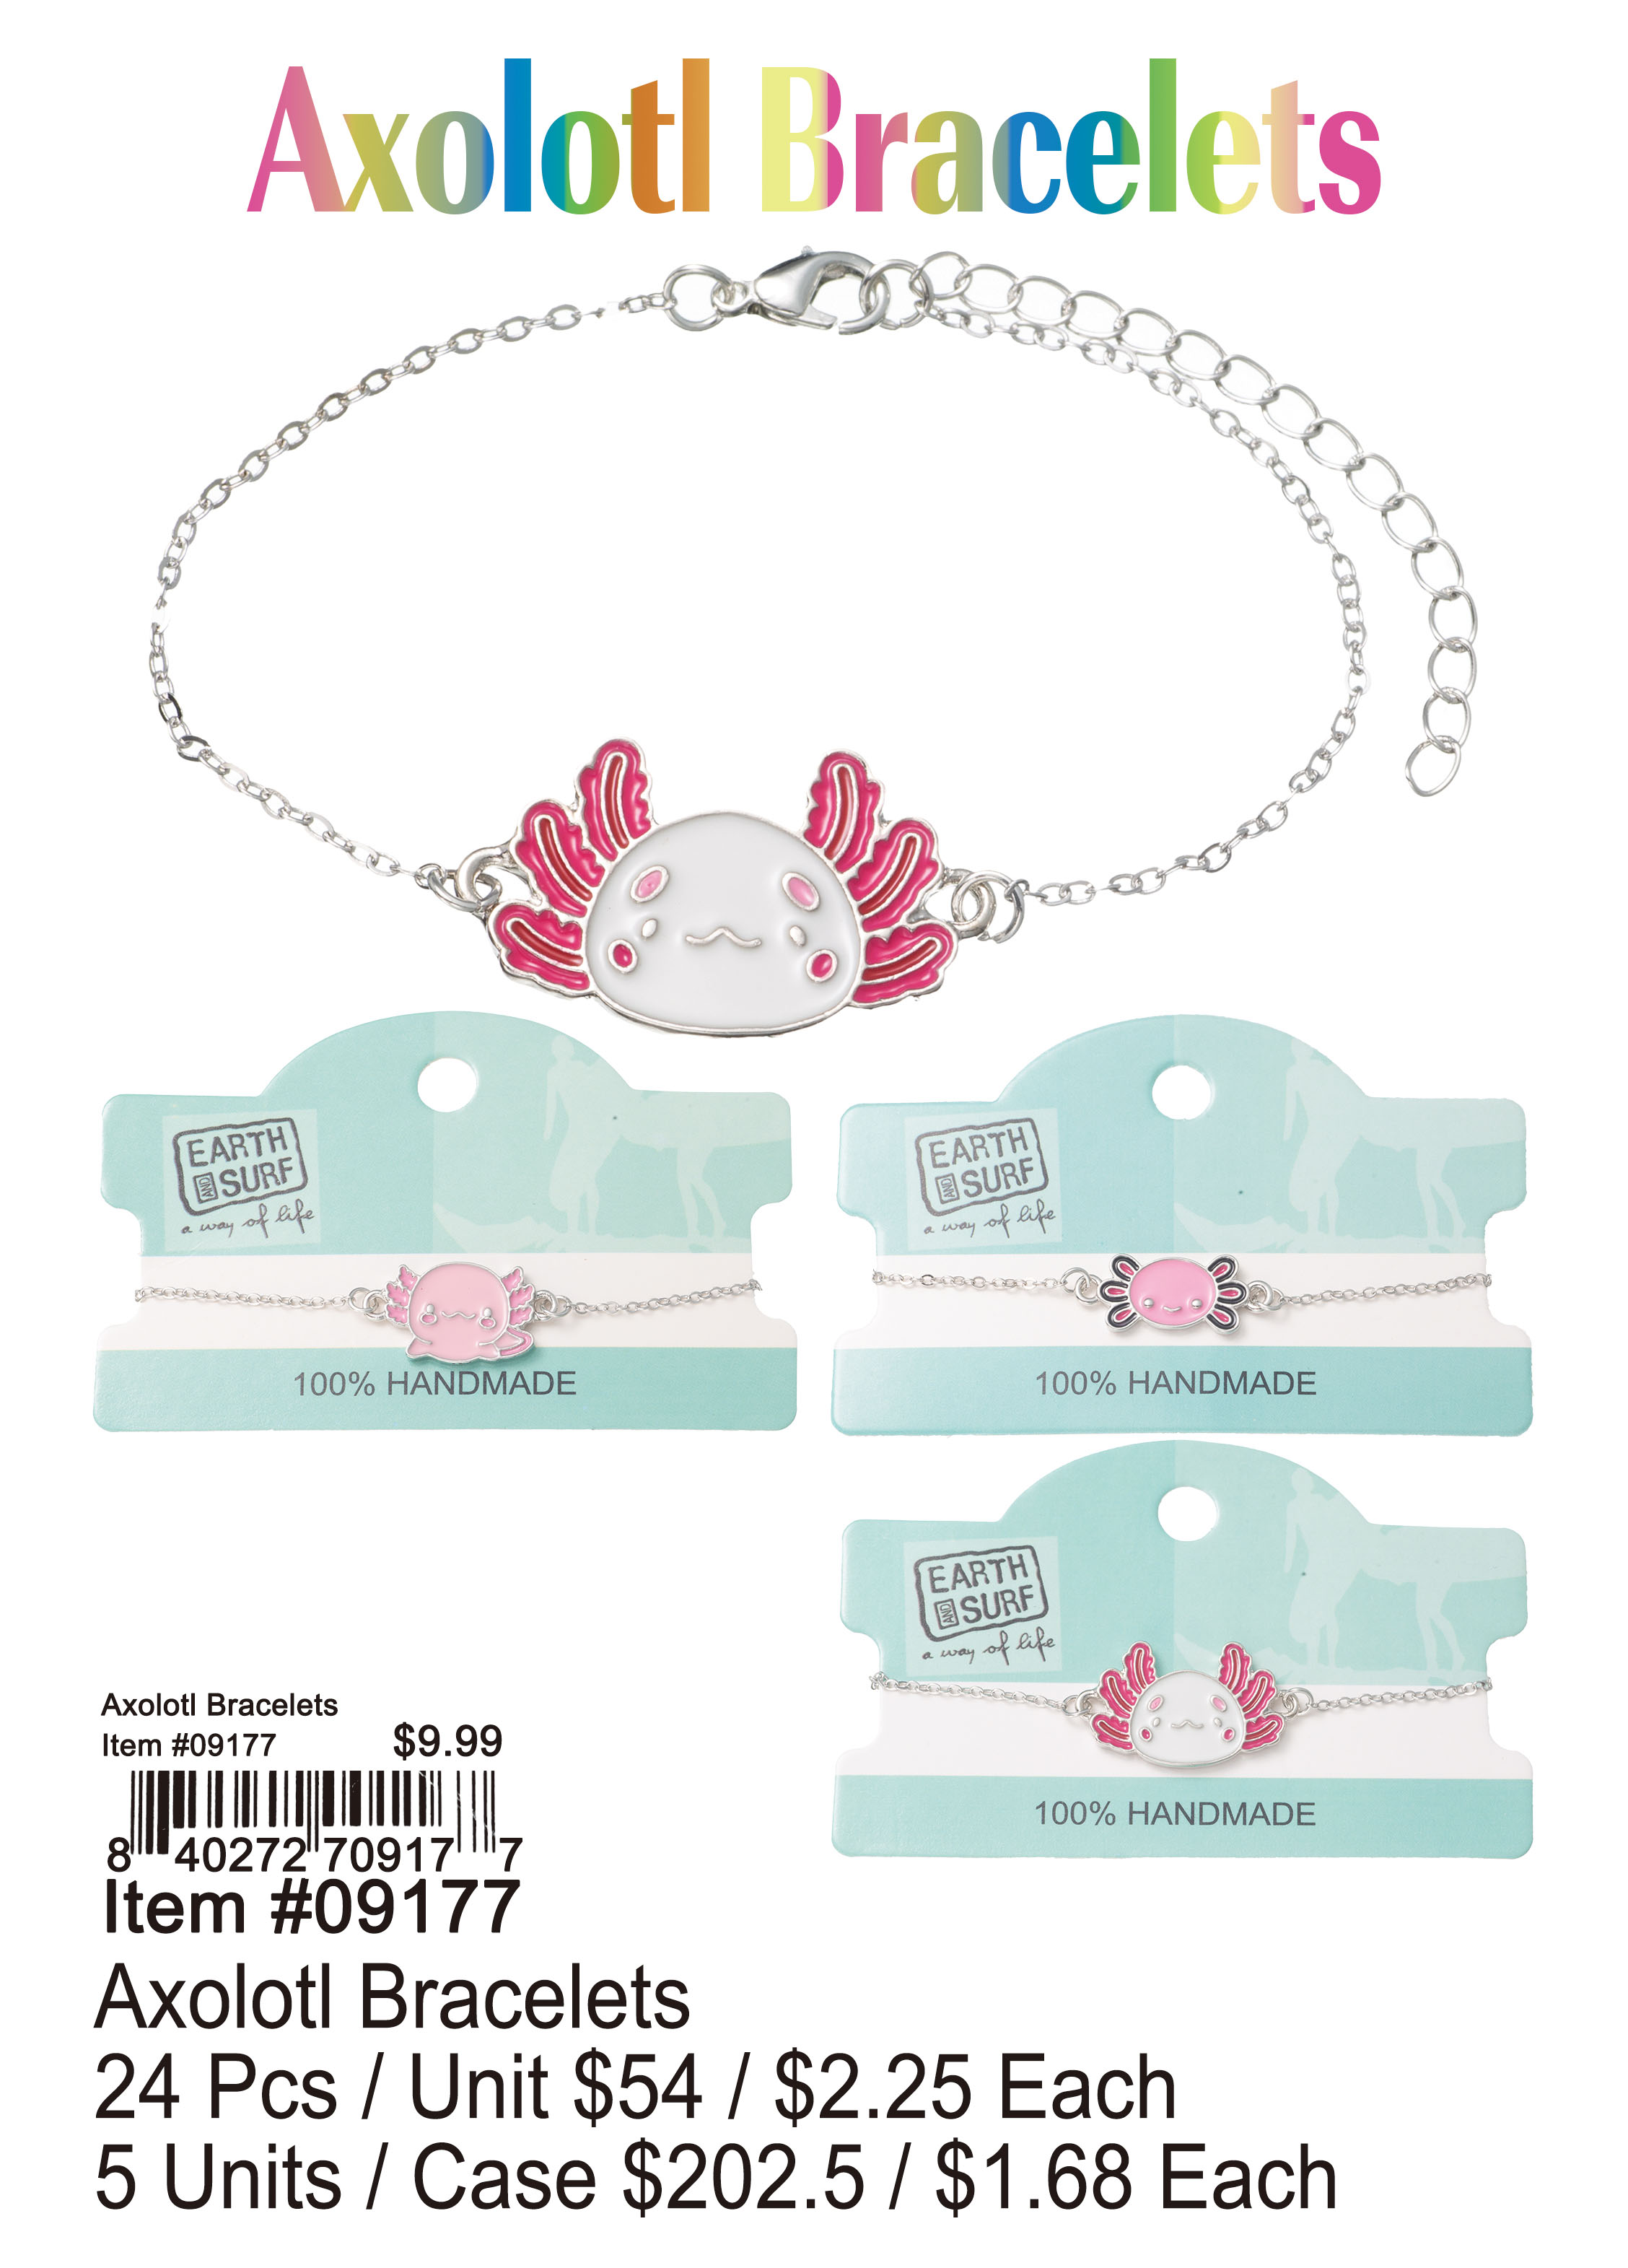 Axolotl Bracelets